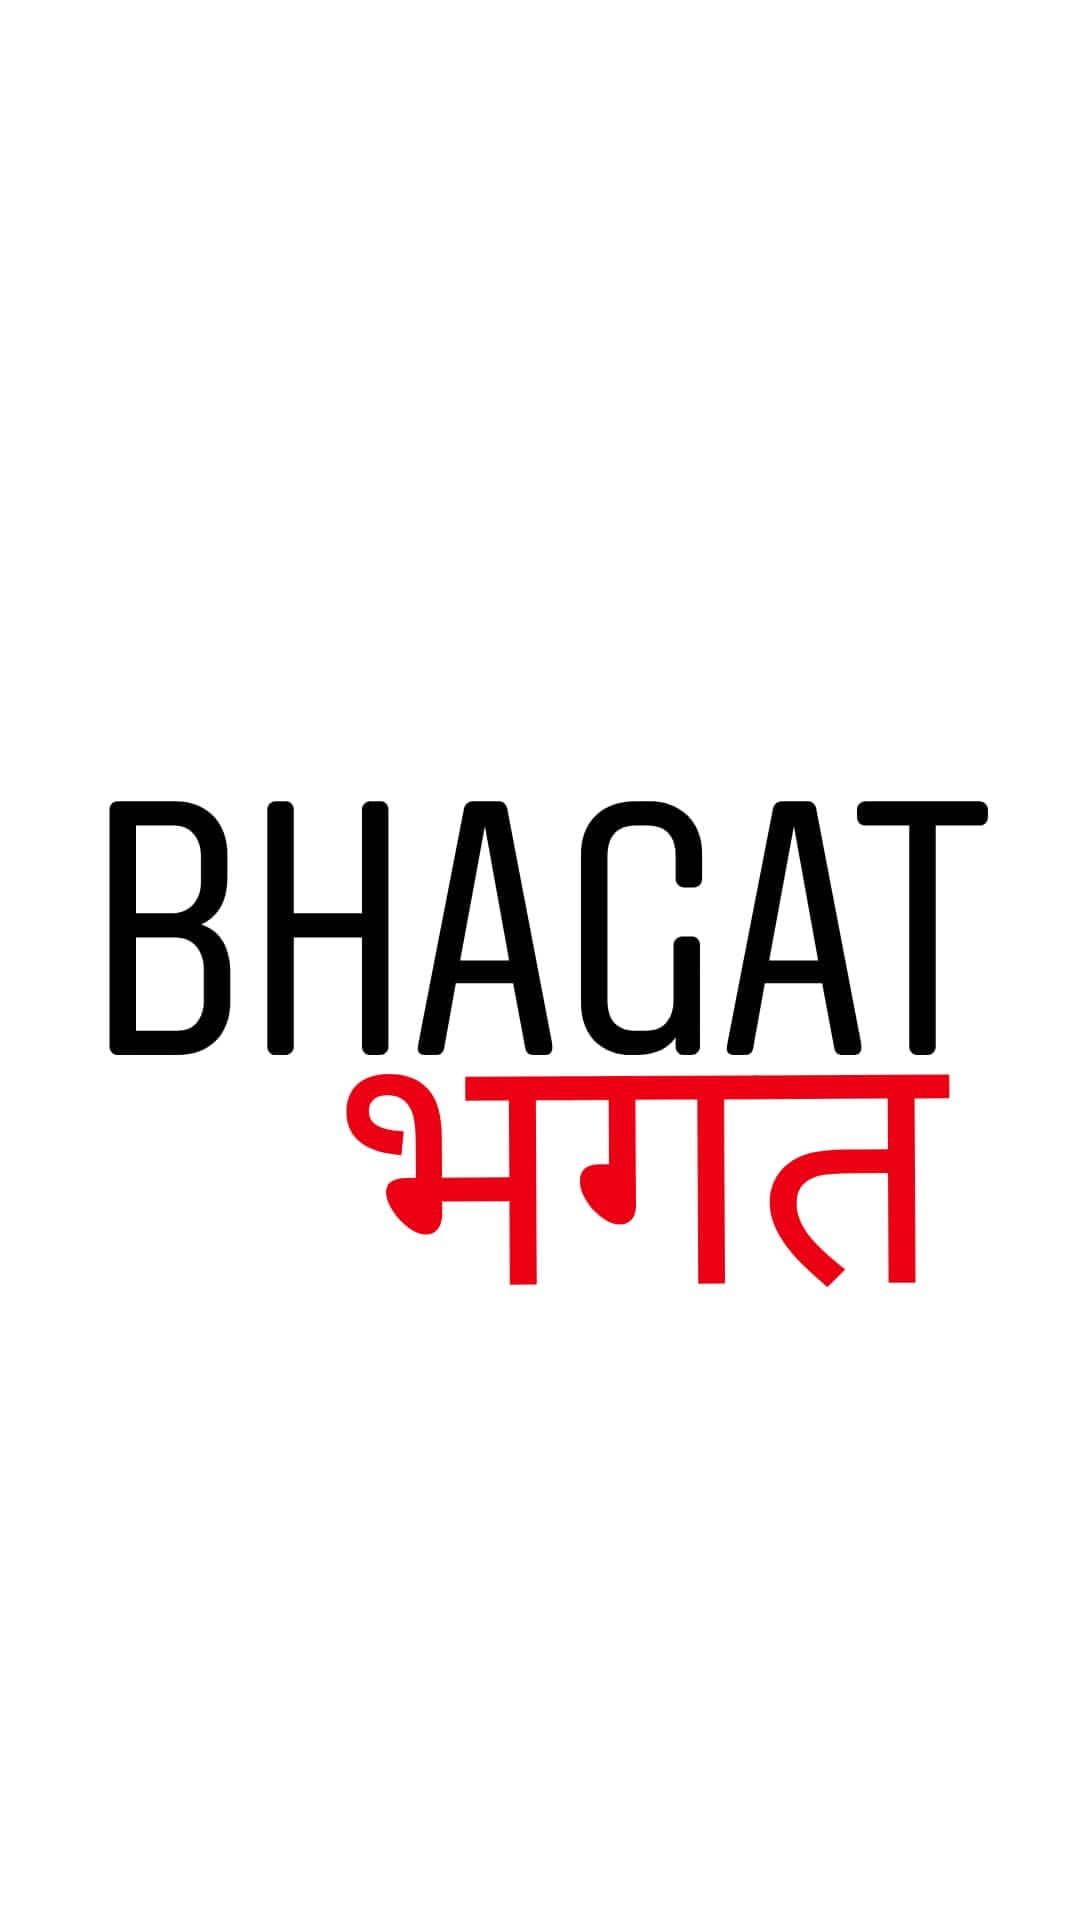 Bhagat Jaipur